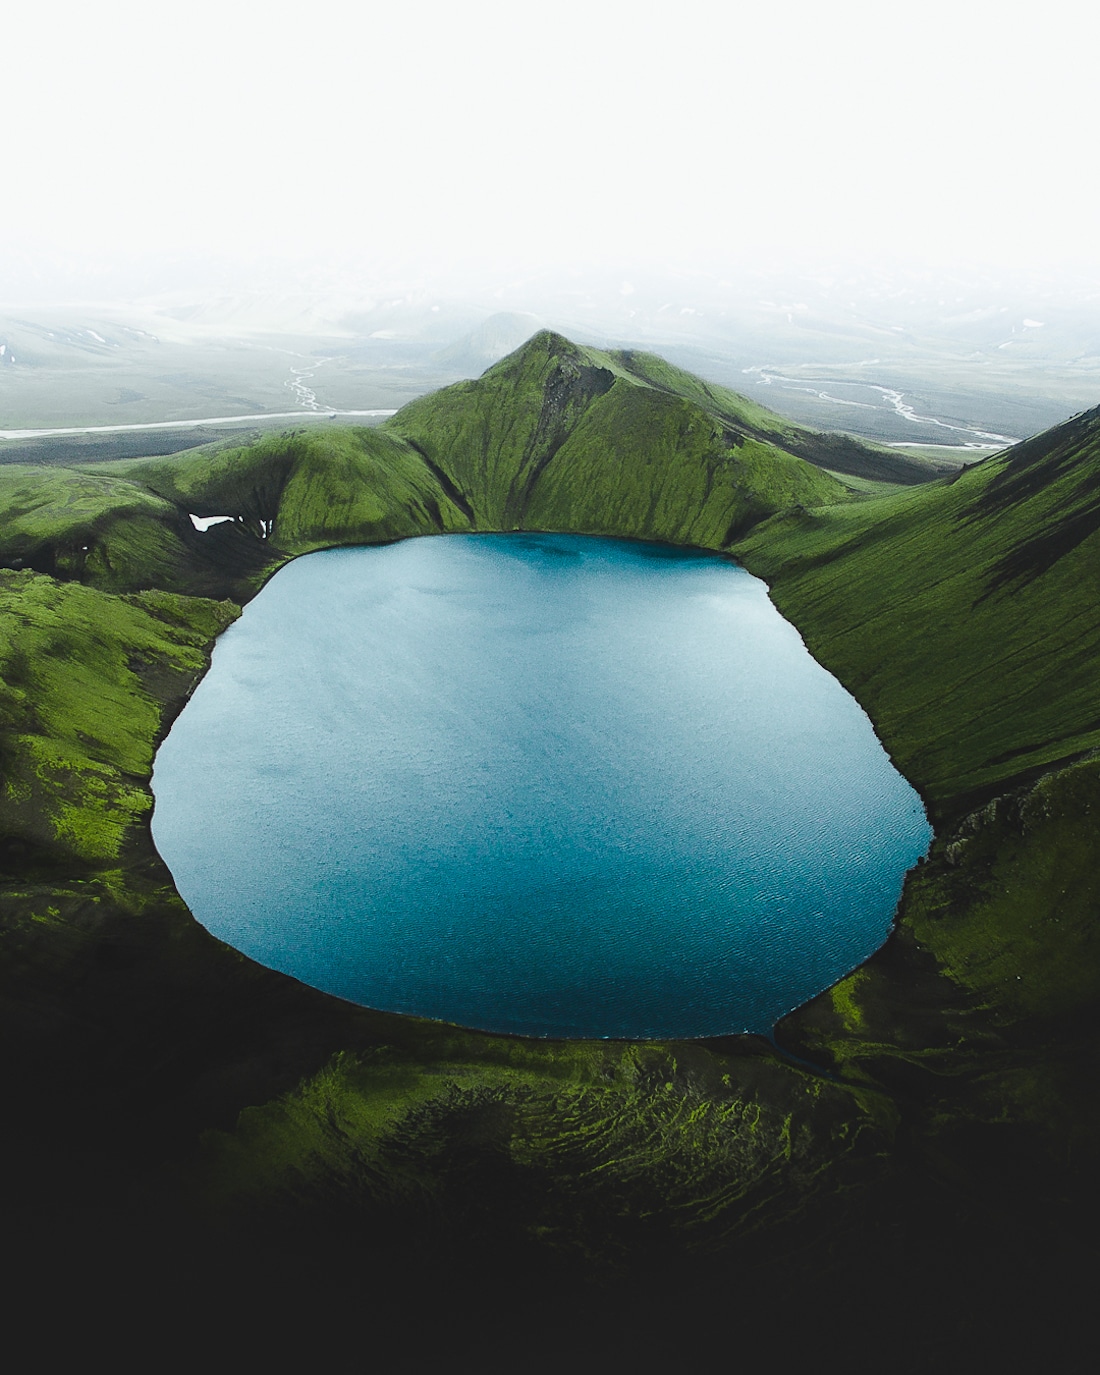 Aerial Photos of Iceland by Gábor Nagy